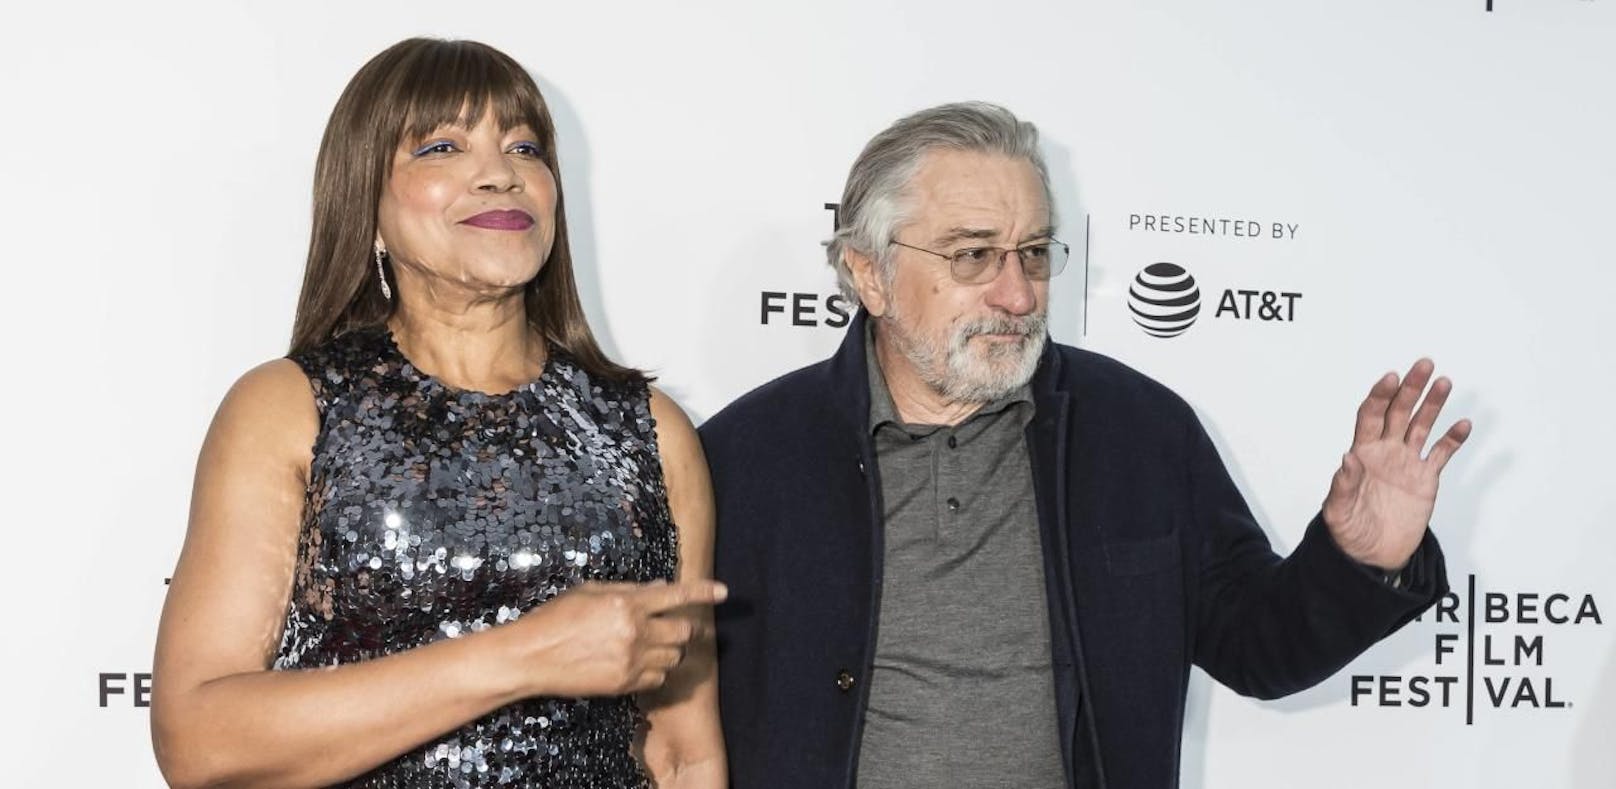 Noch-Ehefrau behauptet: "Robert De Niro stinkt"